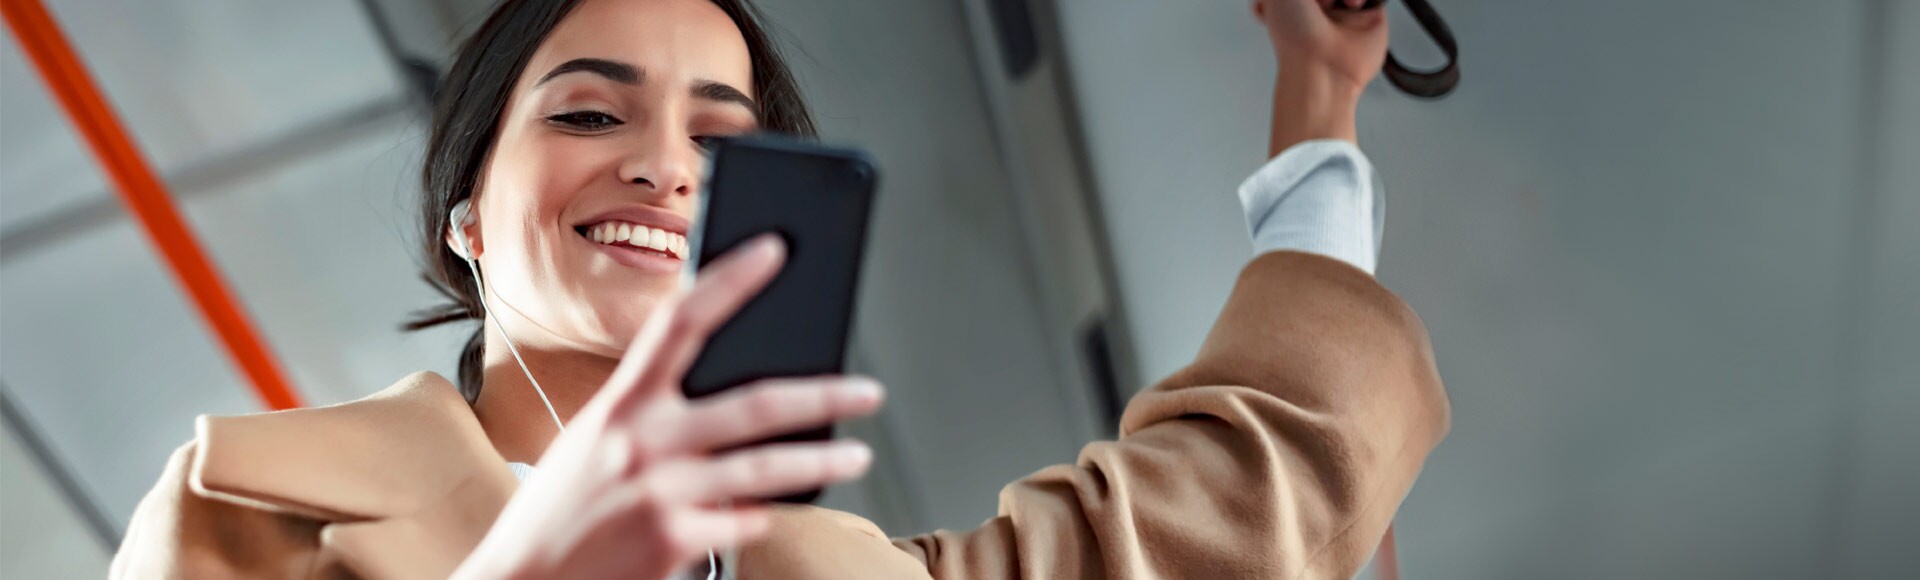 Eine Frau schaut auf ihr Handy in einem Zug.